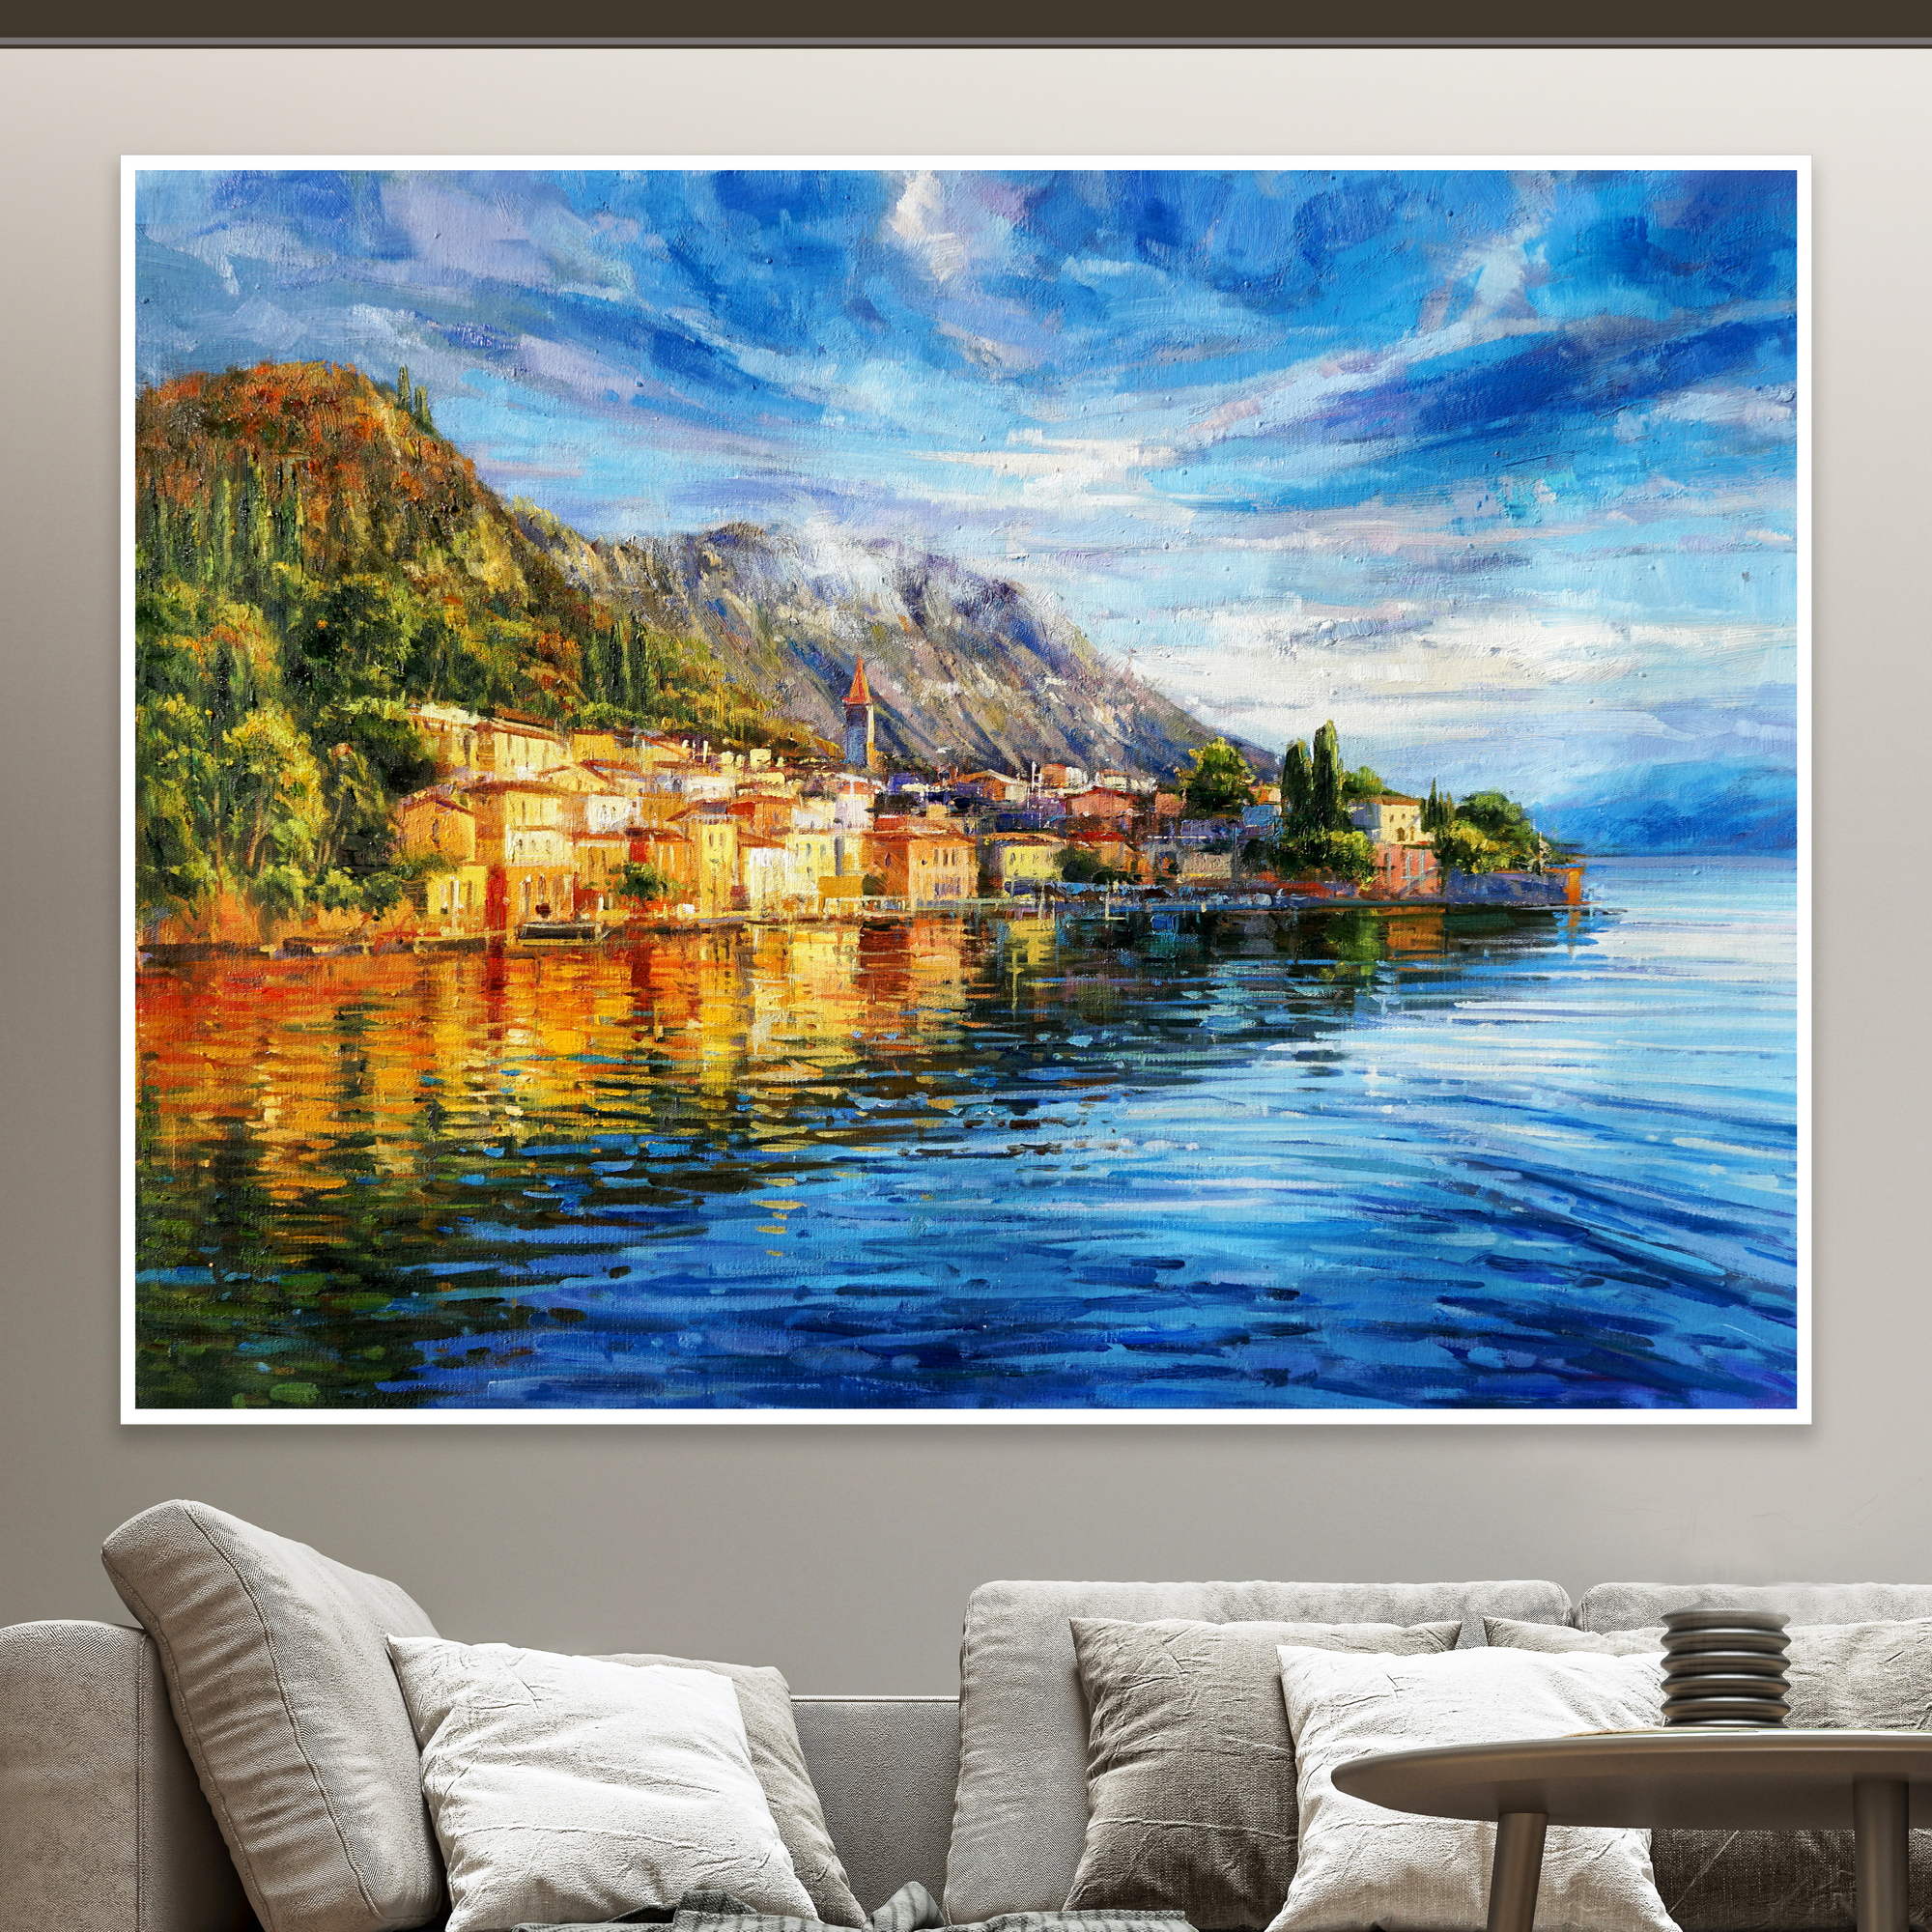 Dipinto del caratteristico paesino di Varenna sul lago di Como